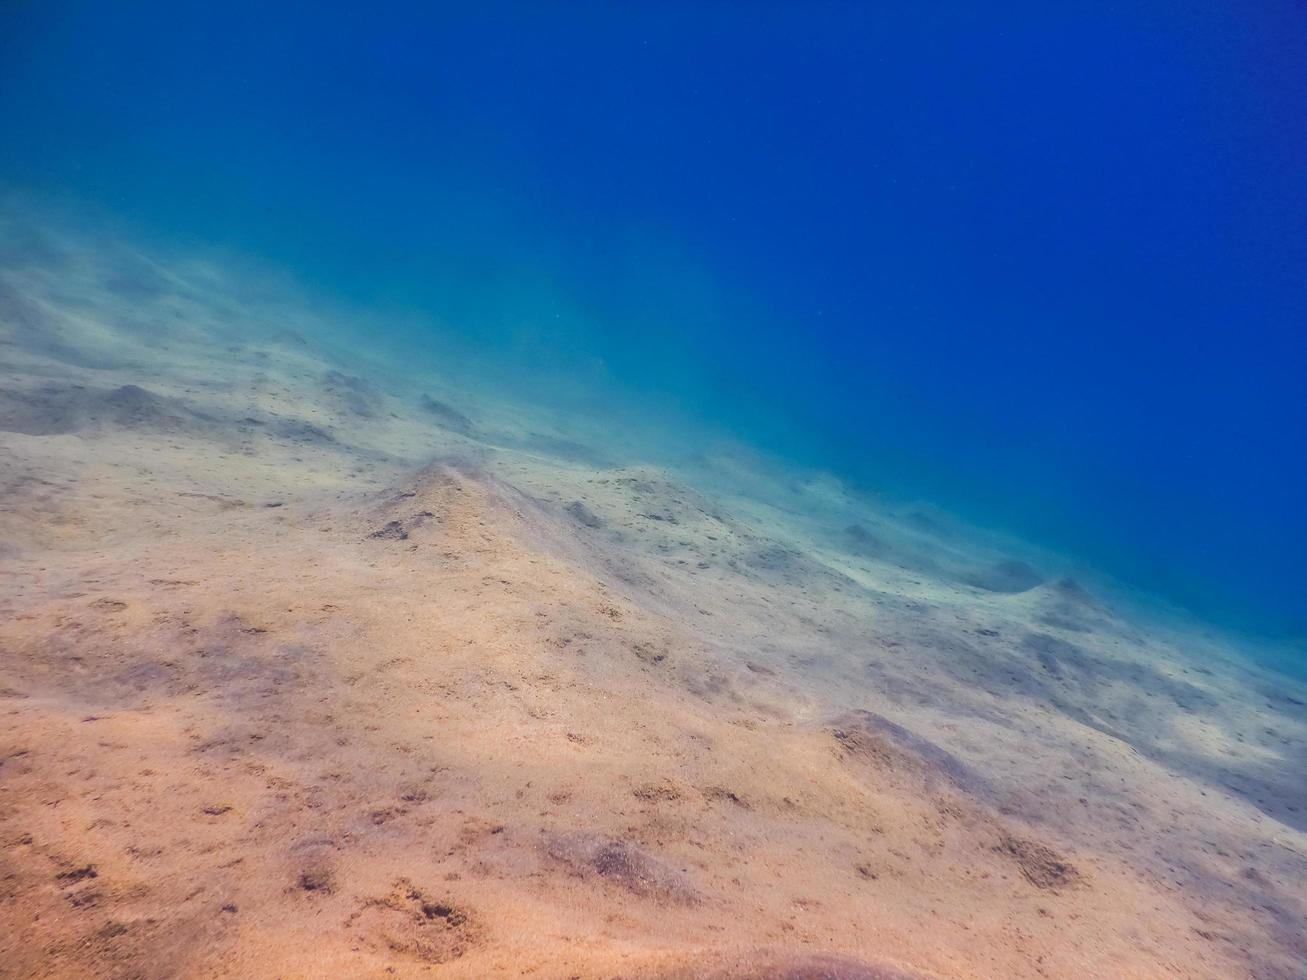 incrível paisagem do fundo do mar com águas azuis profundas foto